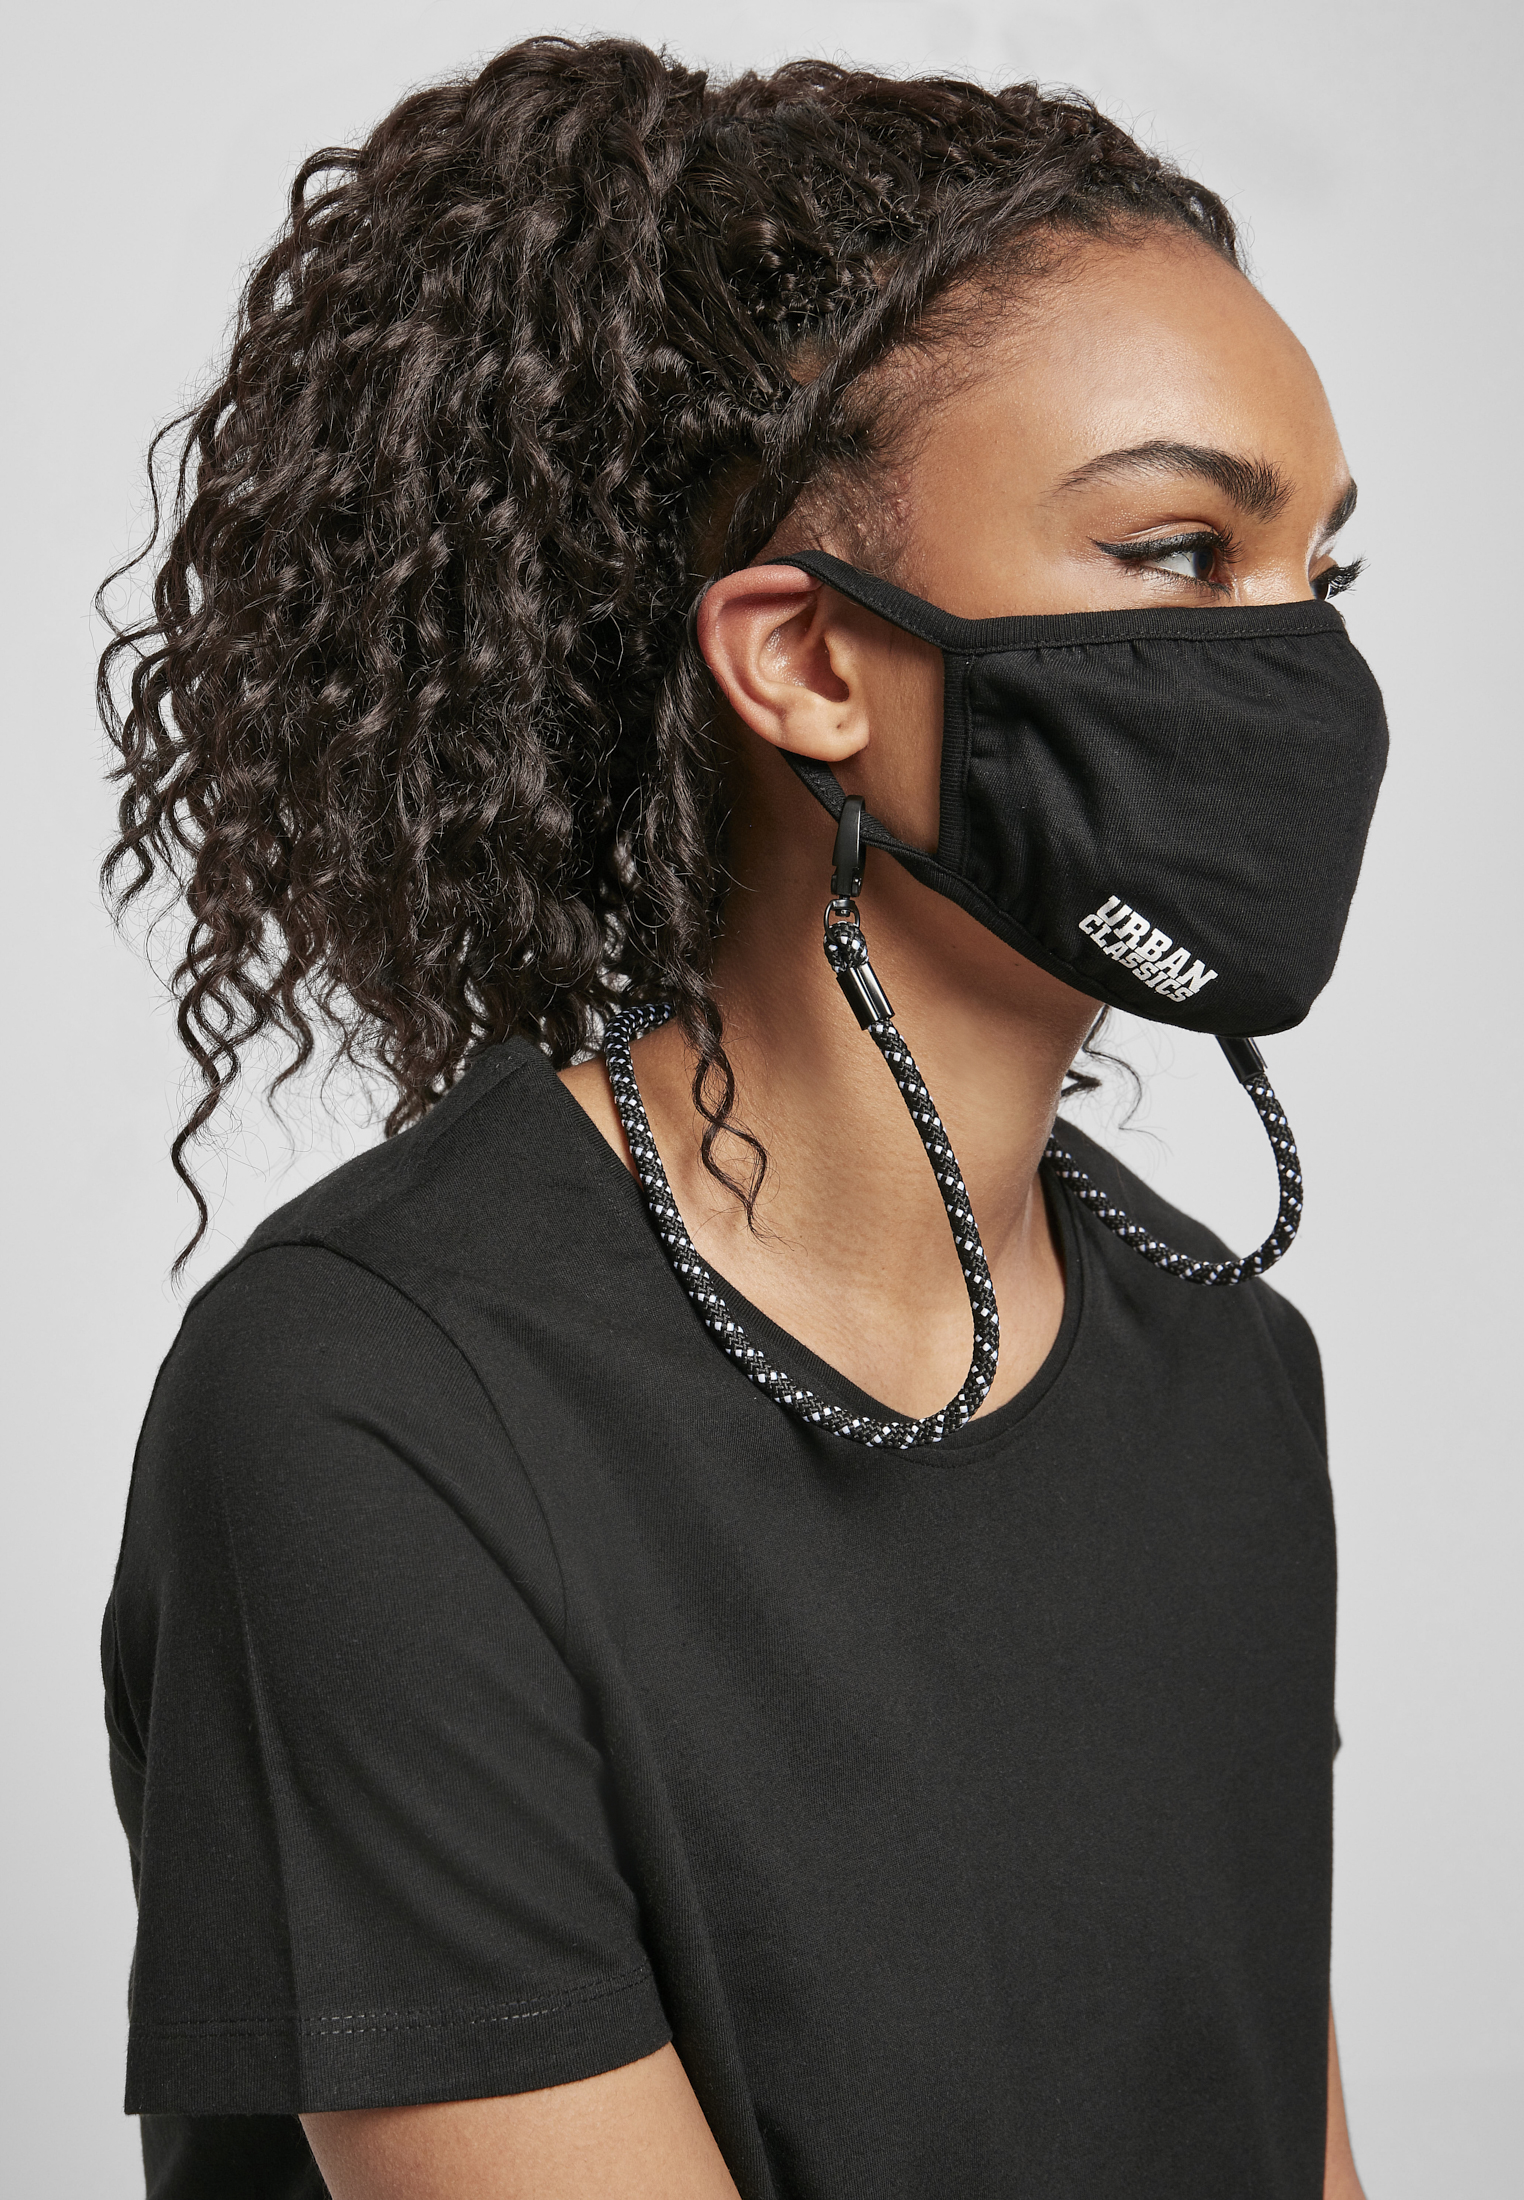 Masken Safety Set in Farbe black